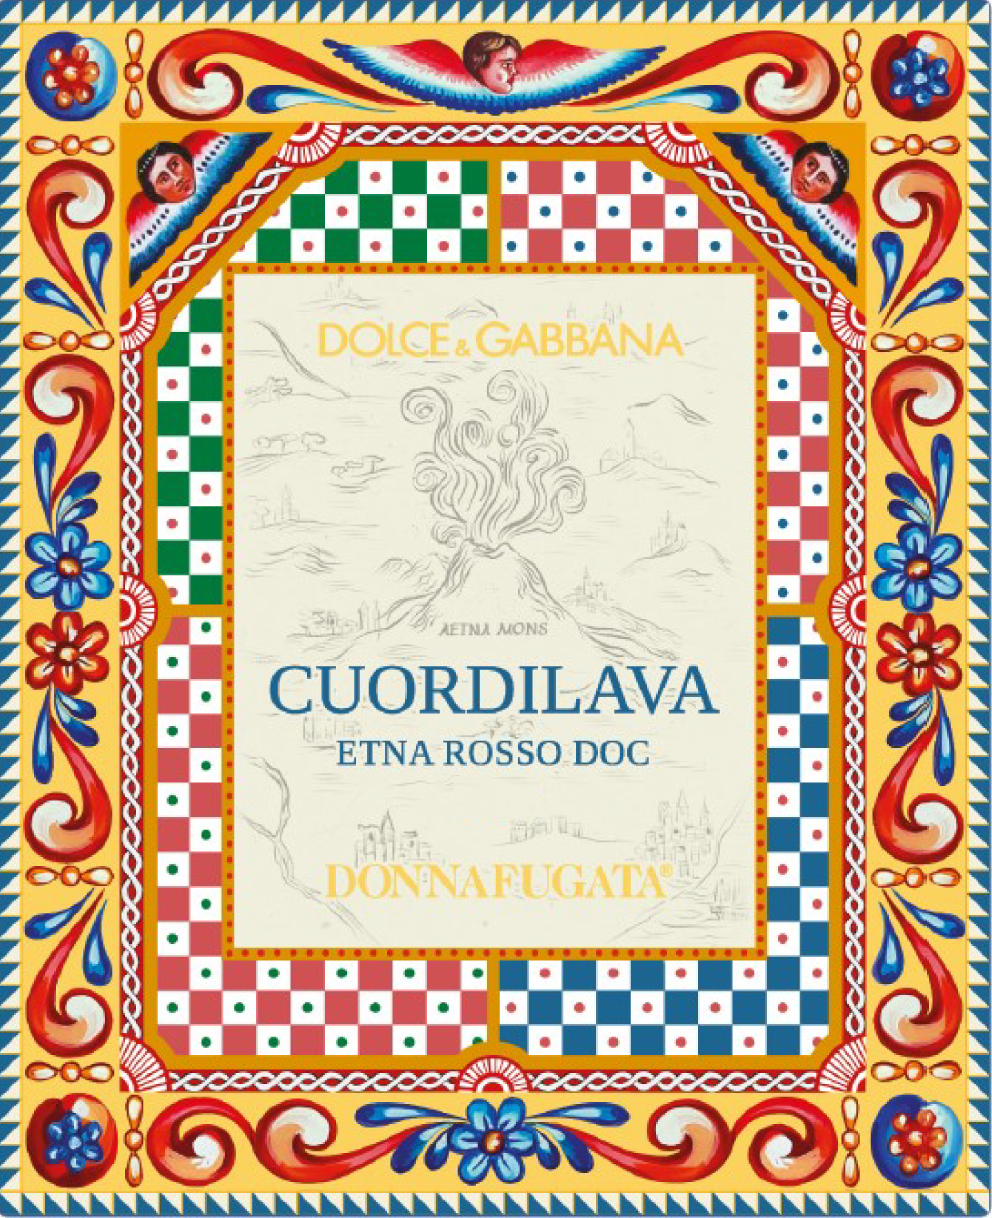 Donnafugata - Cuordilava Etna Rosso Dolce & Gabbana label